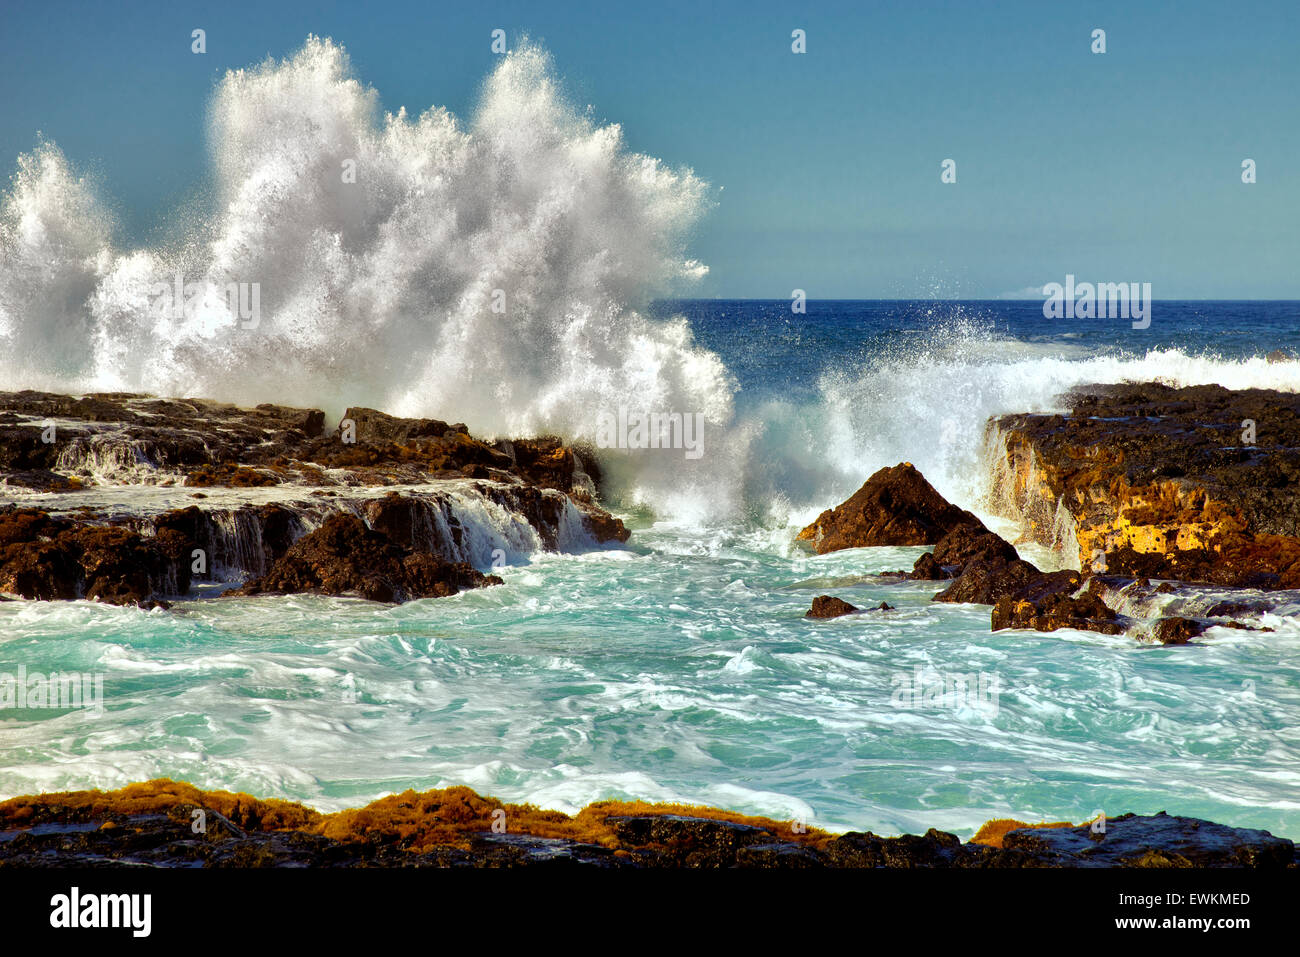 Breaking wave. Hawaii, The Big Island. Stock Photo